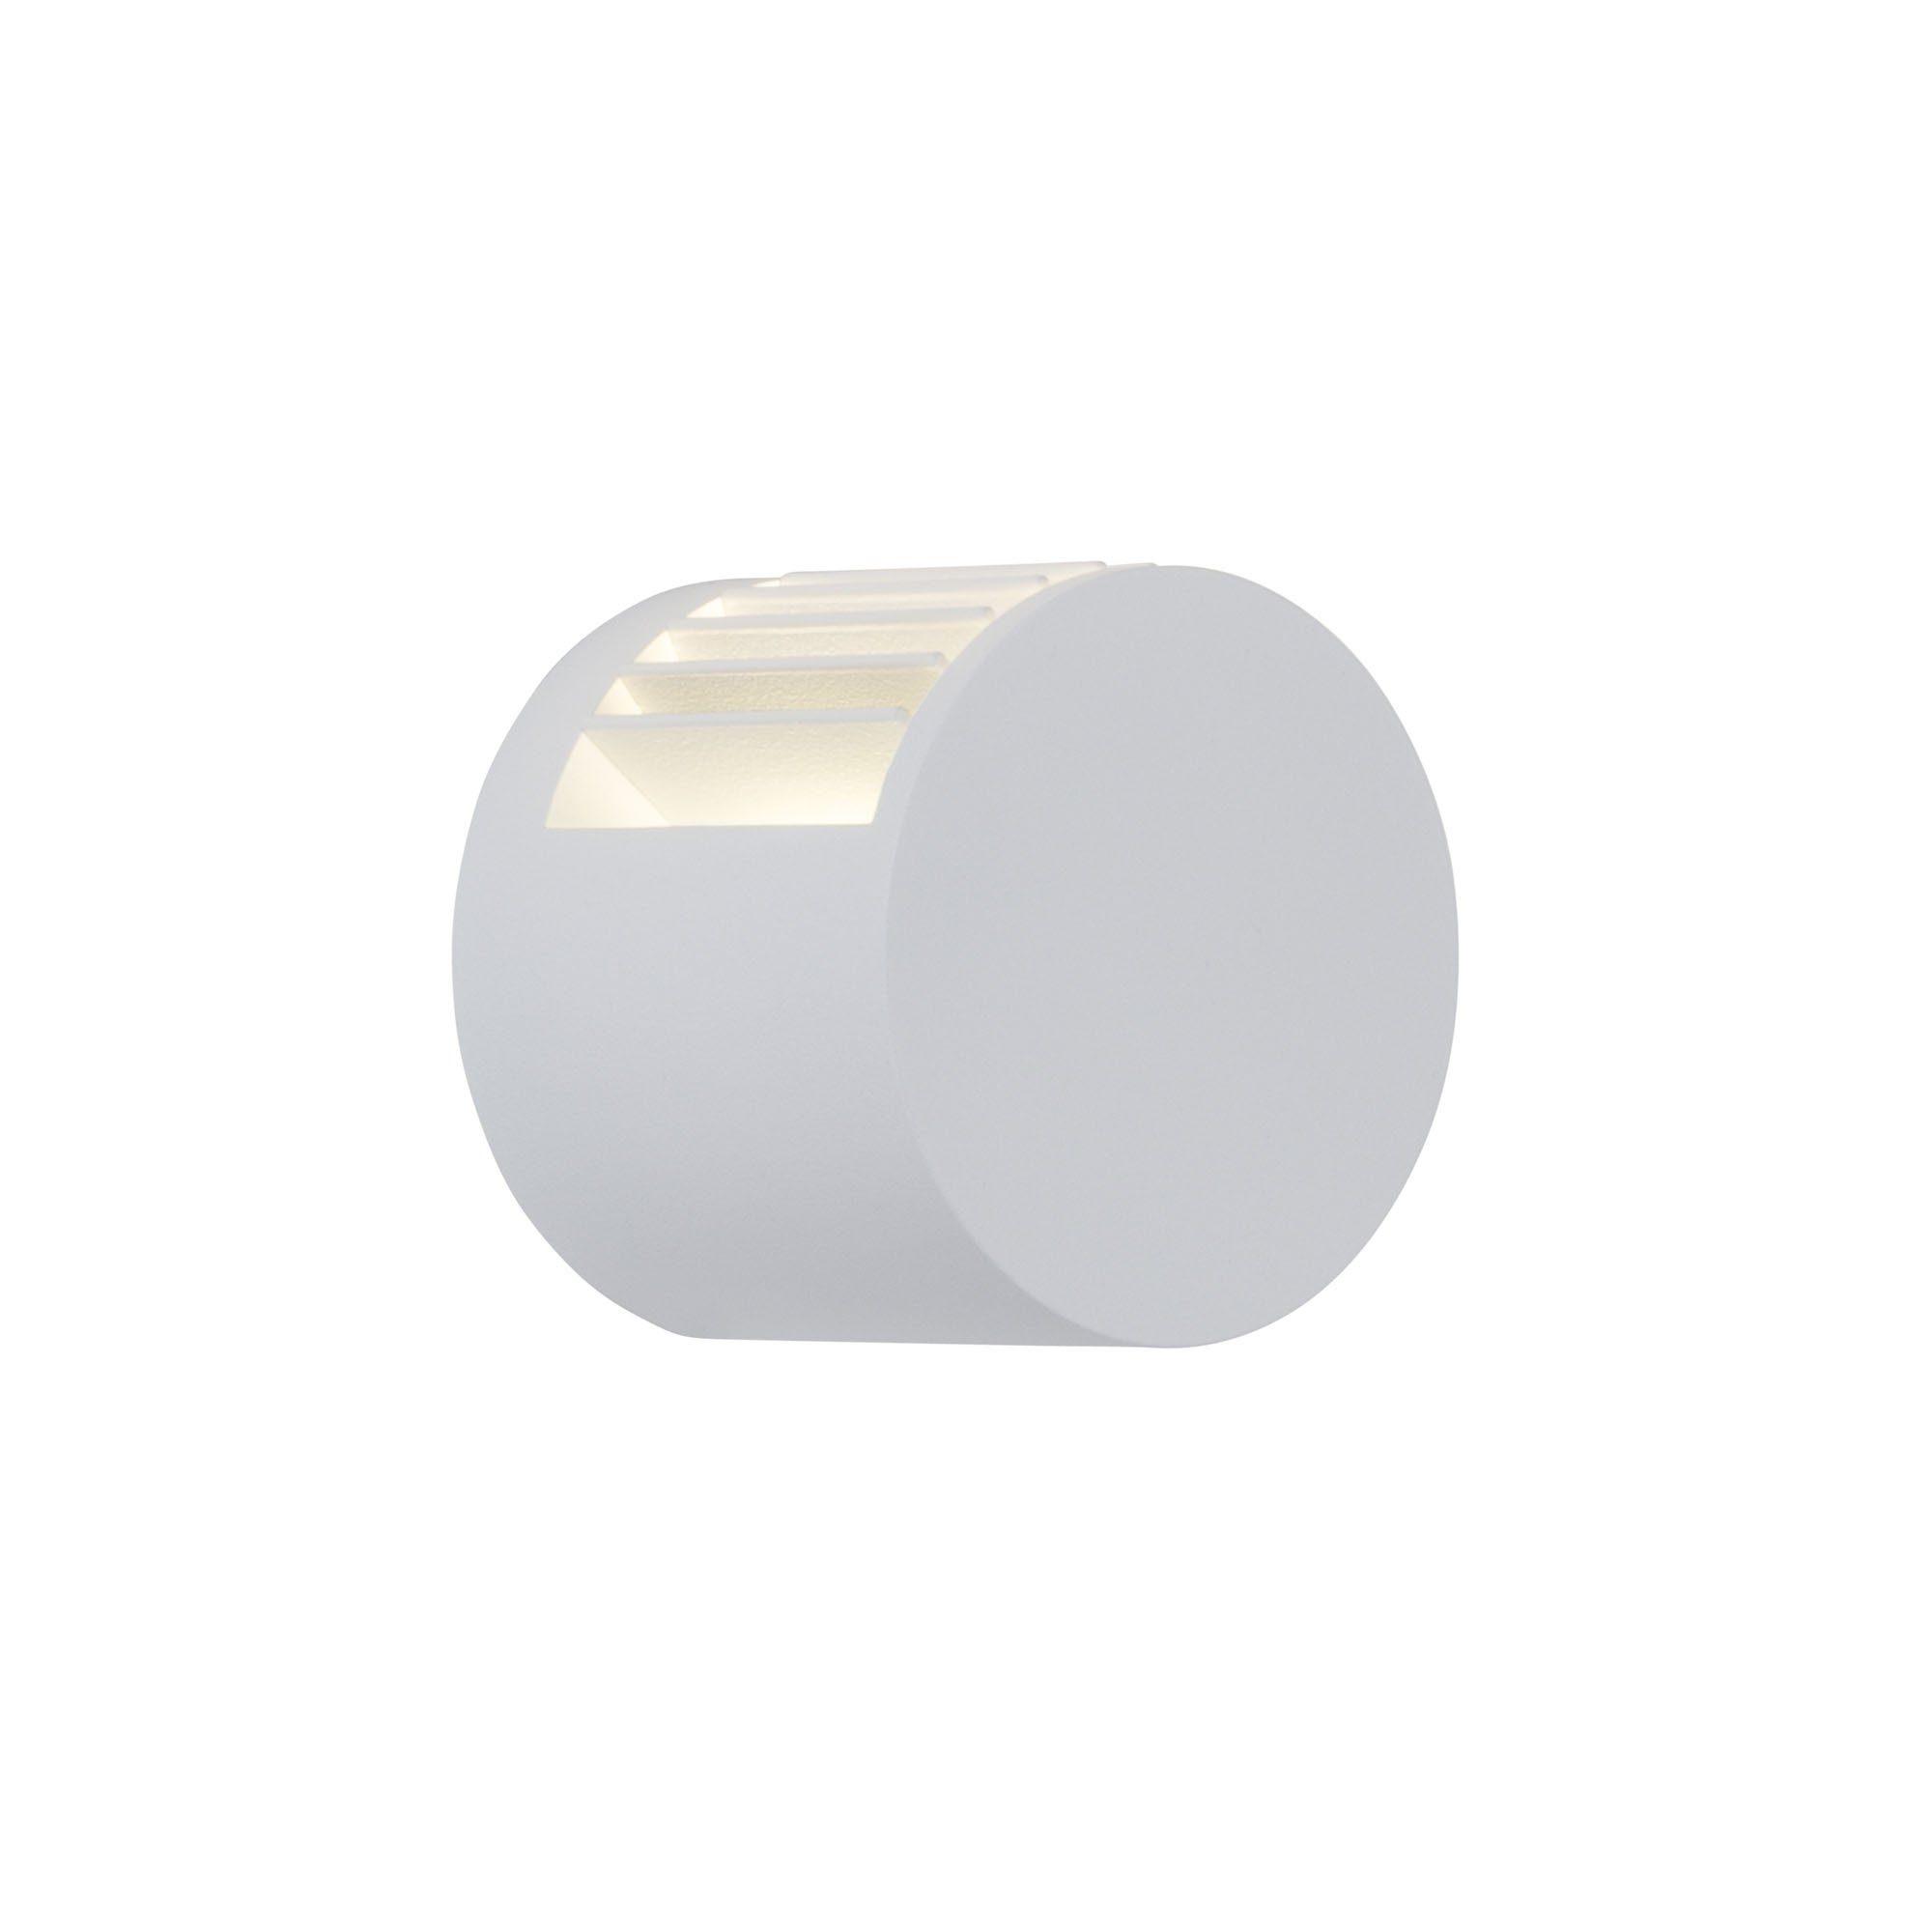 AEG LED Wandleuchte Judon, LED wechselbar, Warmweiß, Ø 7,9 cm, 310 lm, warmweiß, IP65, Alu-Druckguss/Glas, weiß